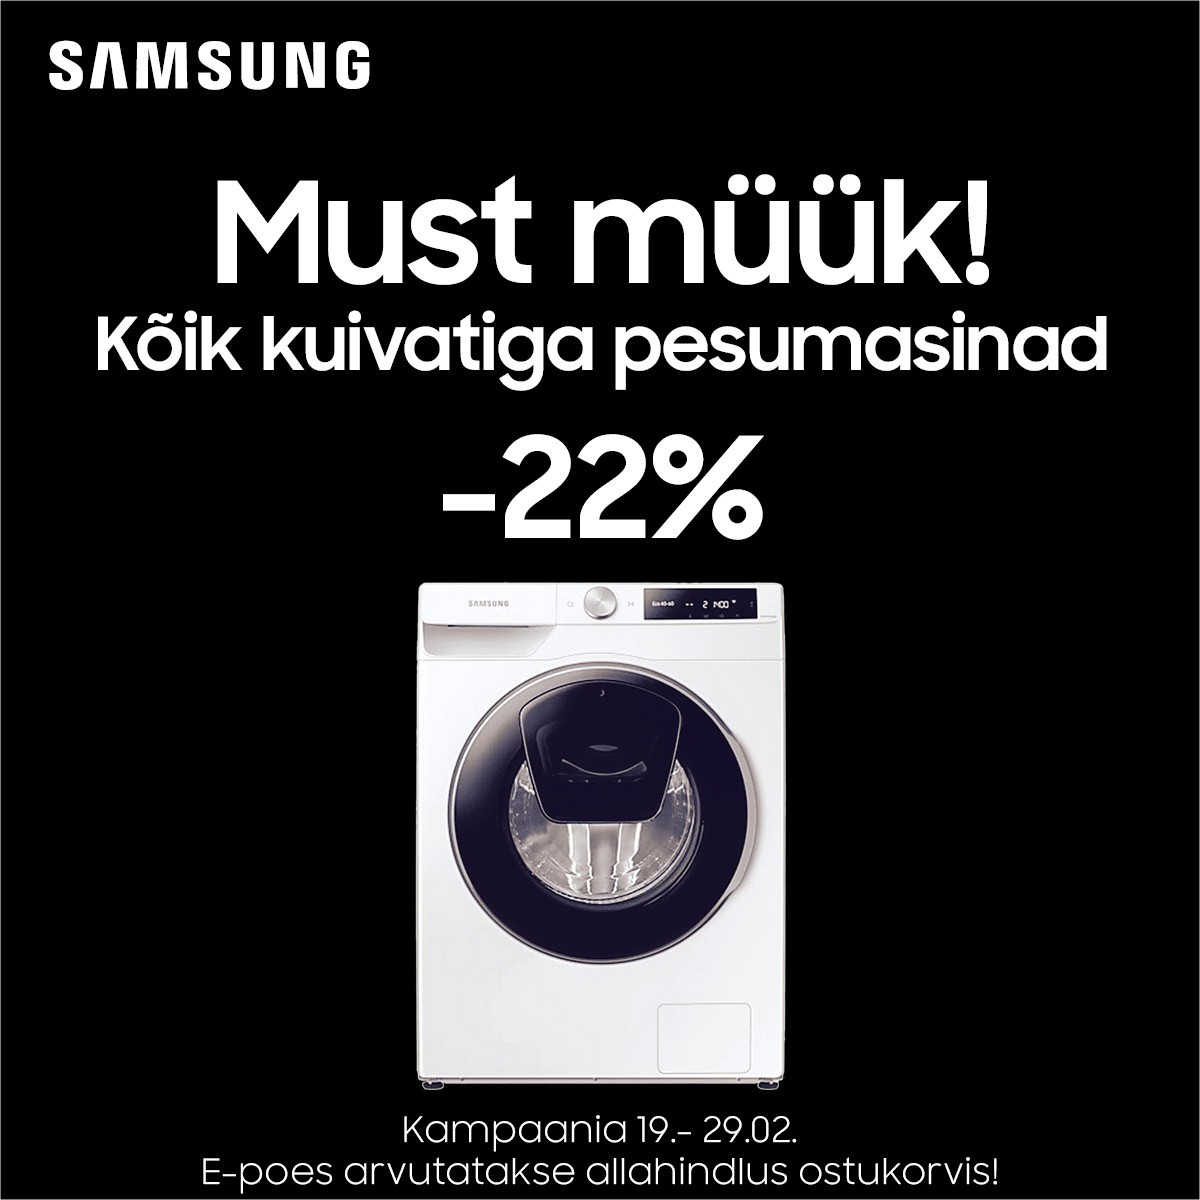 Must müük: Samsung kuivatiga pesumasinad kõik -22%